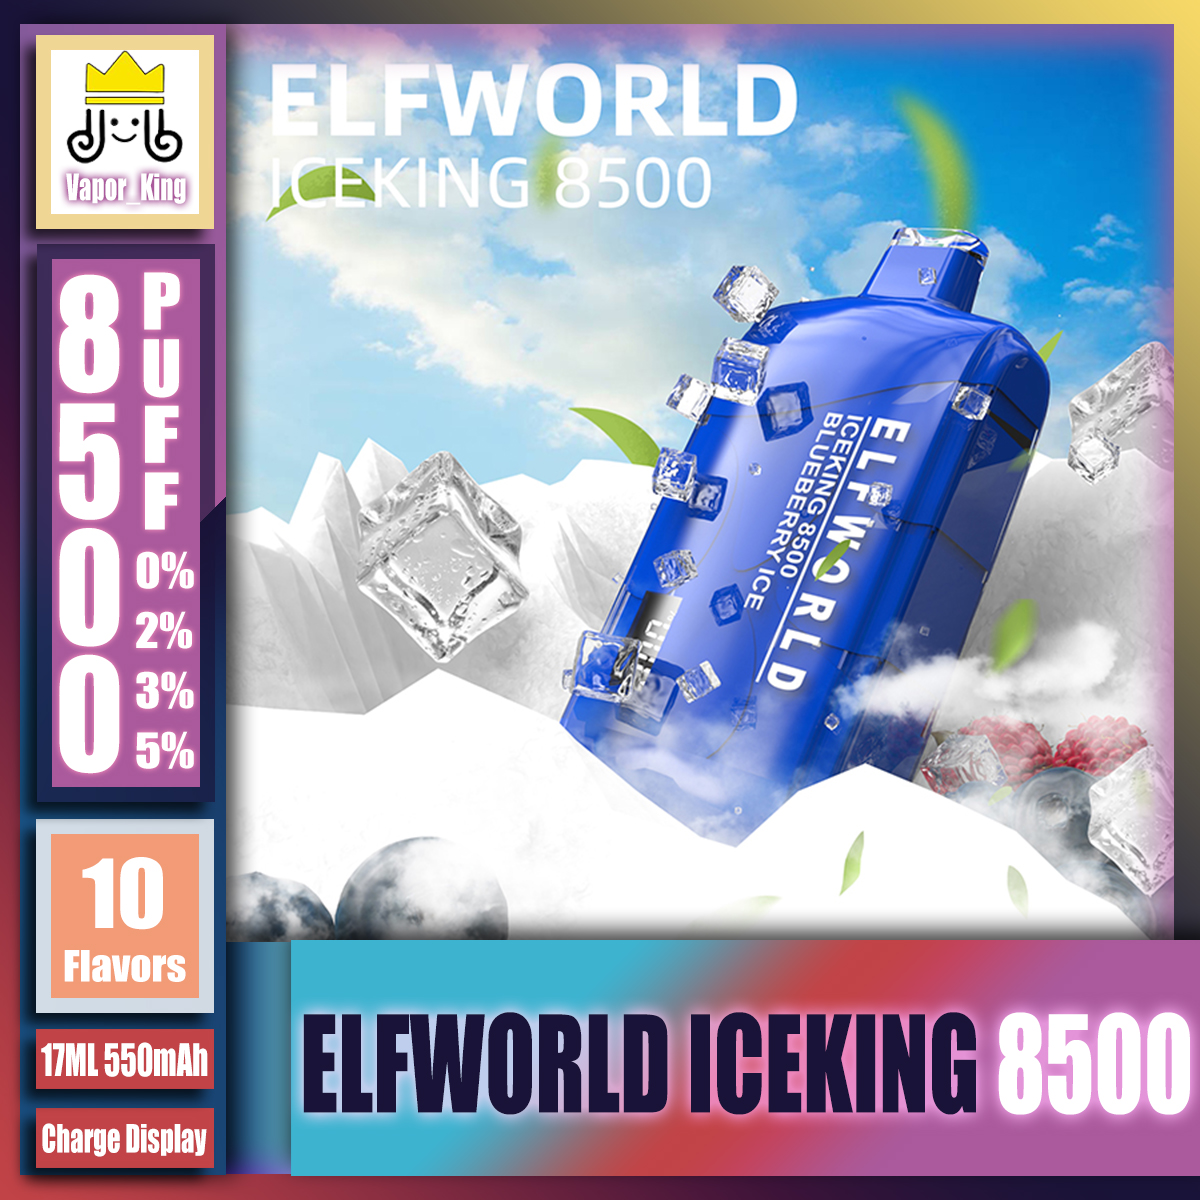 Oryginalne lodowe elfworld 8500 Puff 0/2/3/5% jednorazowe ładowanie krystalicznego wyświetlacza E-papierosy Urządzenia Vape Pen with 550 mAh Bateria 17 ml Regulowane przepływ powietrza